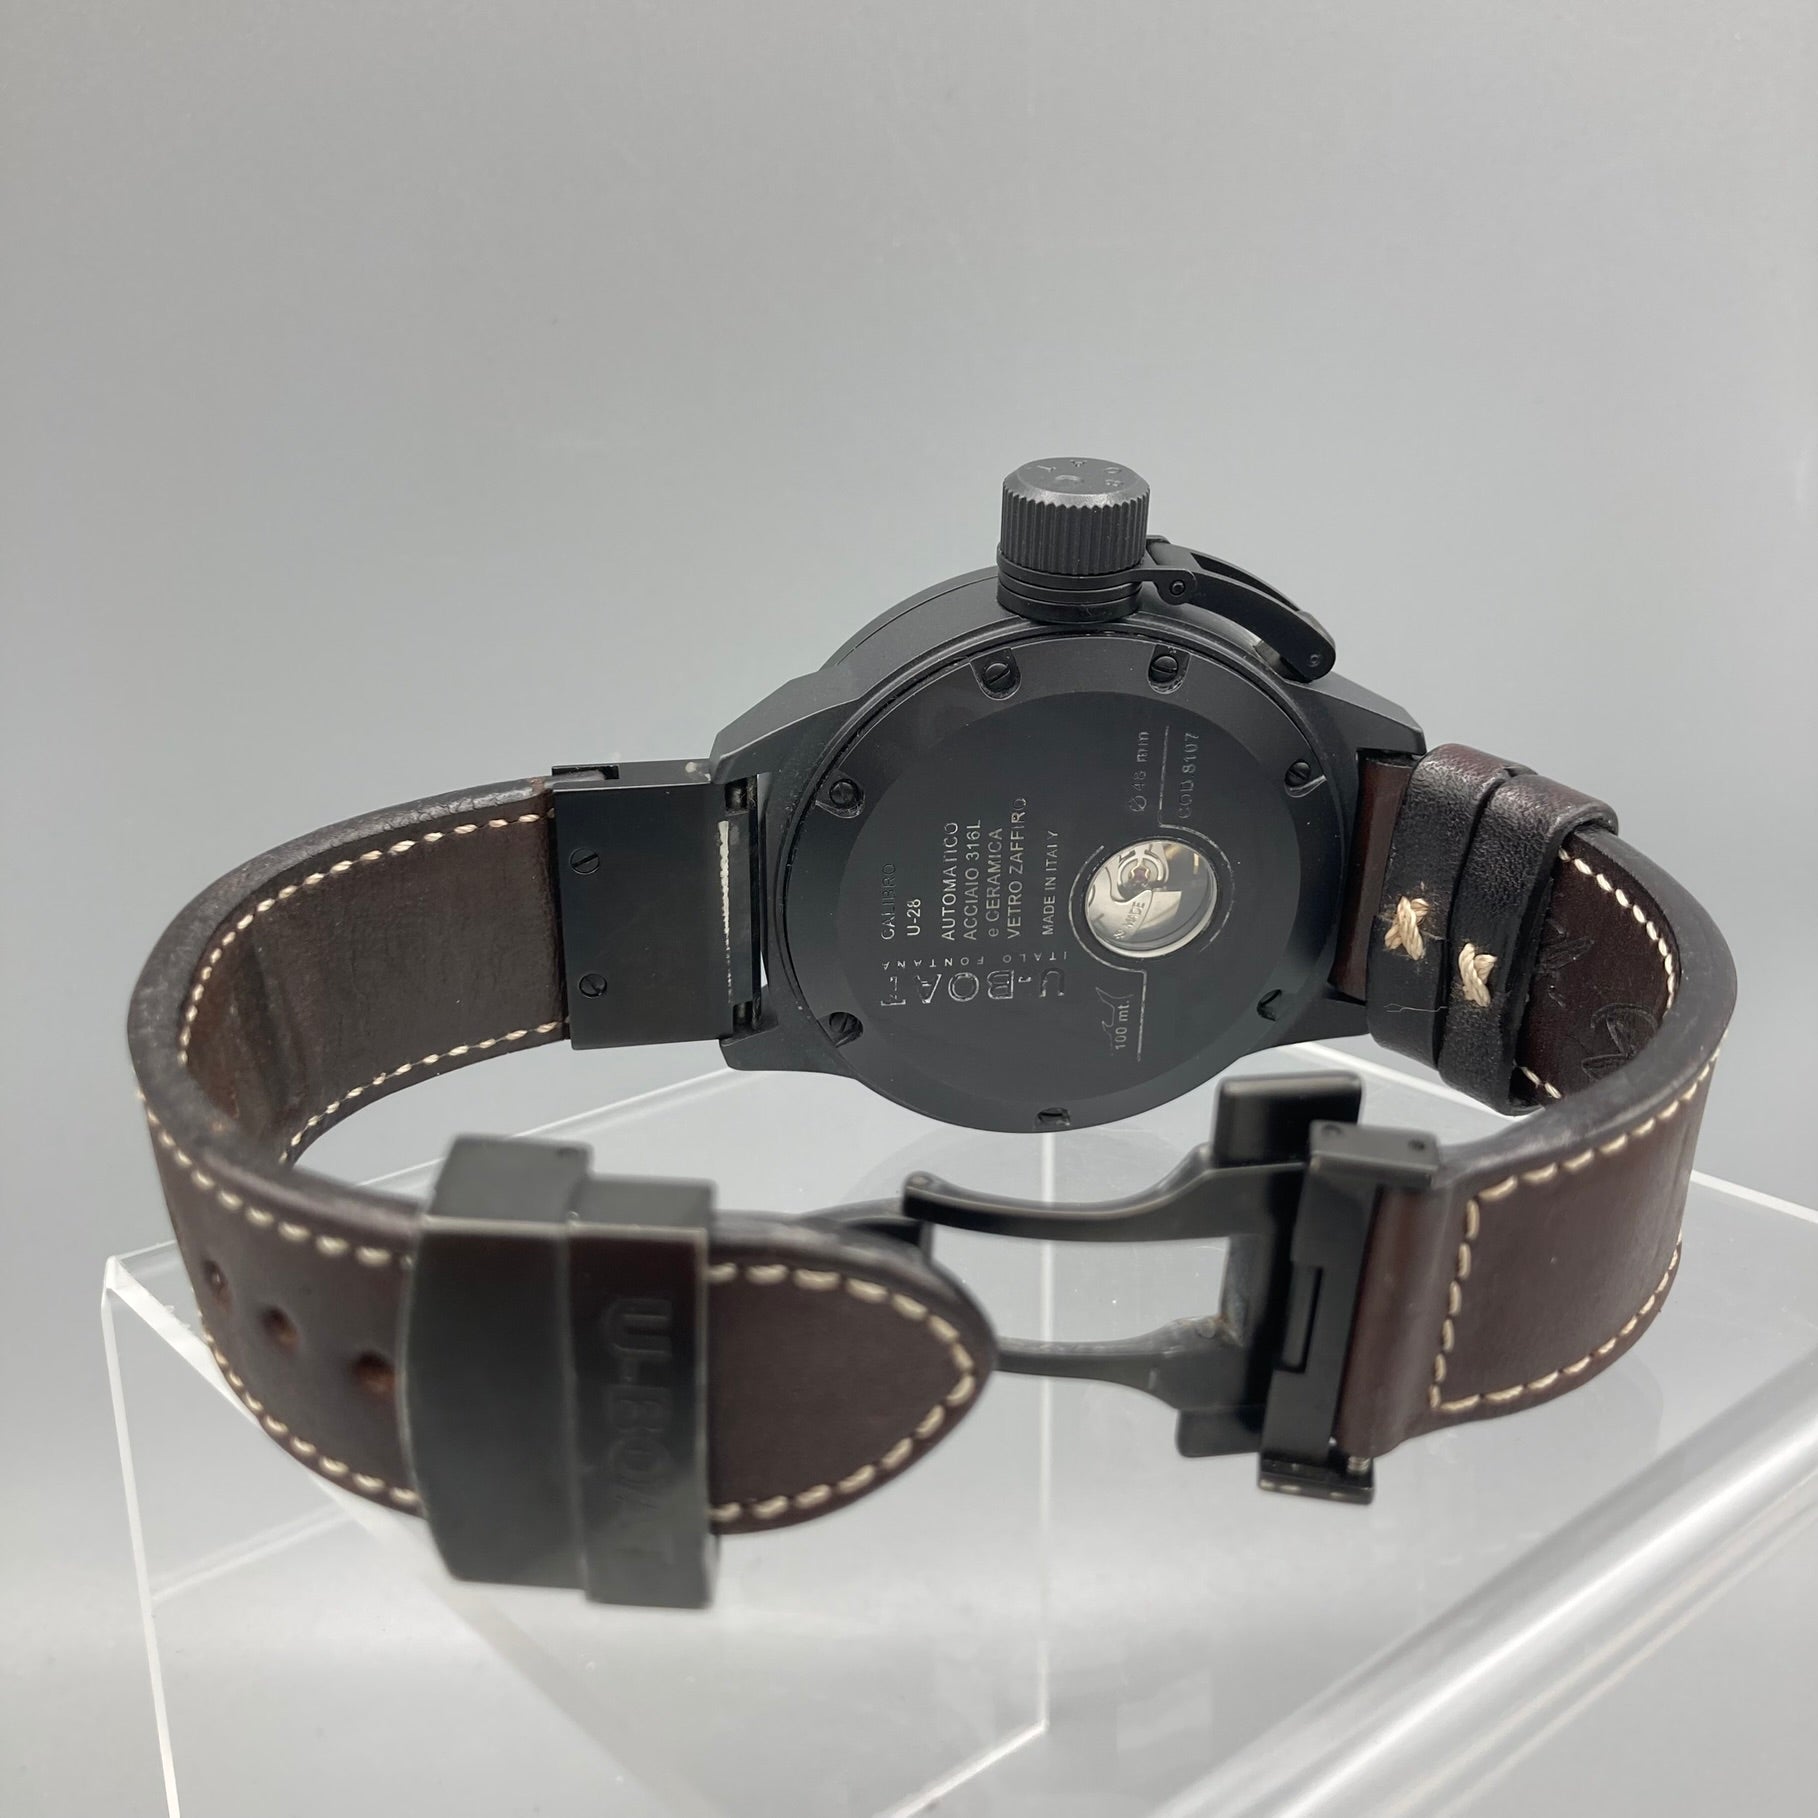 U-Boat Classico 48 Automatic Ceramic Black Watch 8107